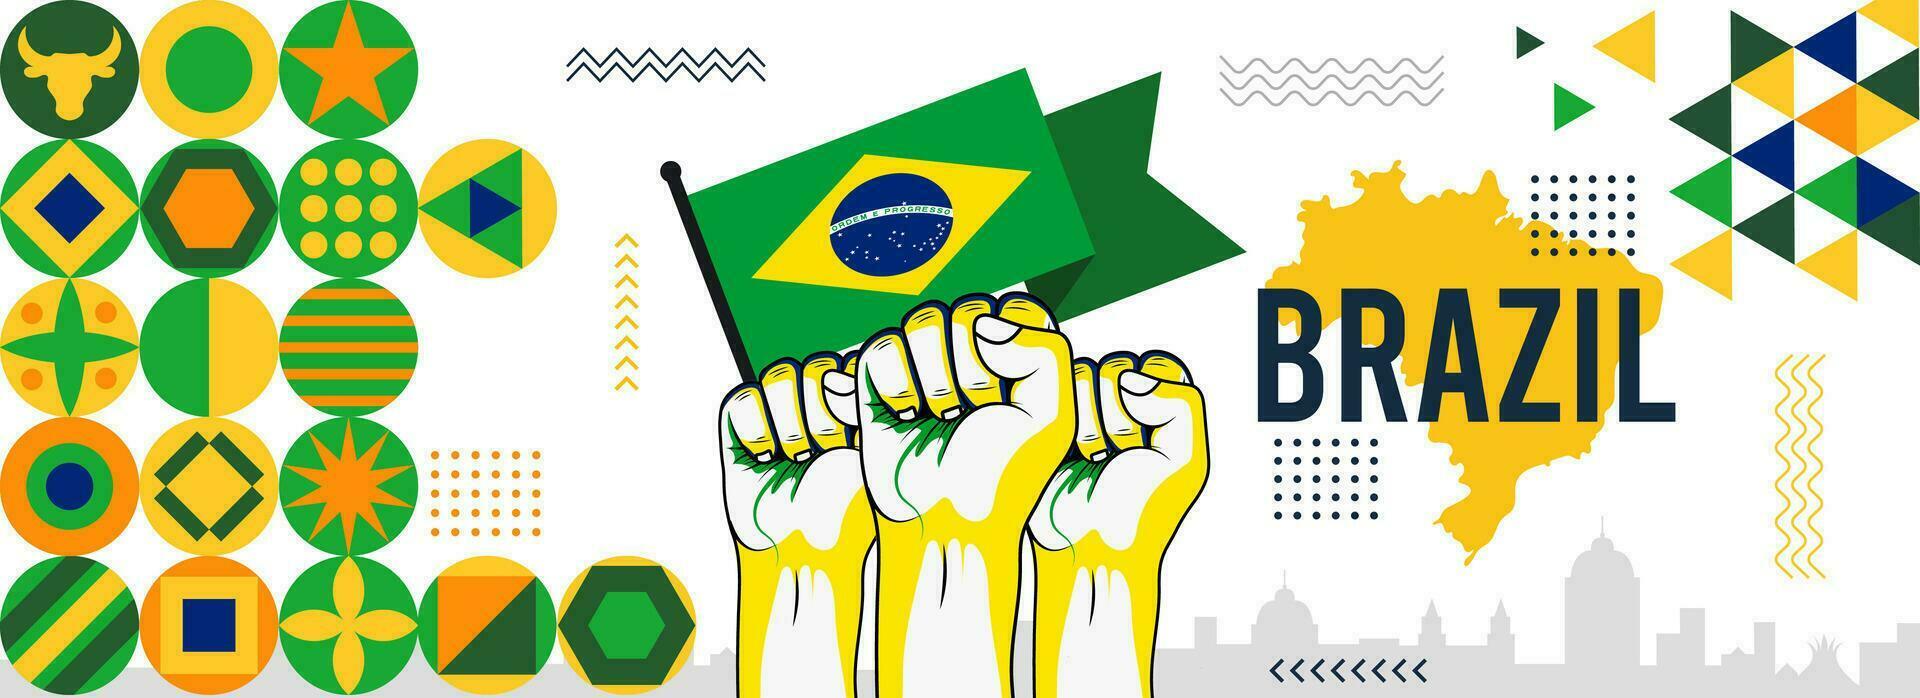 Brazilië onafhankelijkheid dag viering banier met sterk verheven vuisten. vlag en kaart van Brazilië modern retro ontwerp met abstract pictogrammen. vector illustratie.